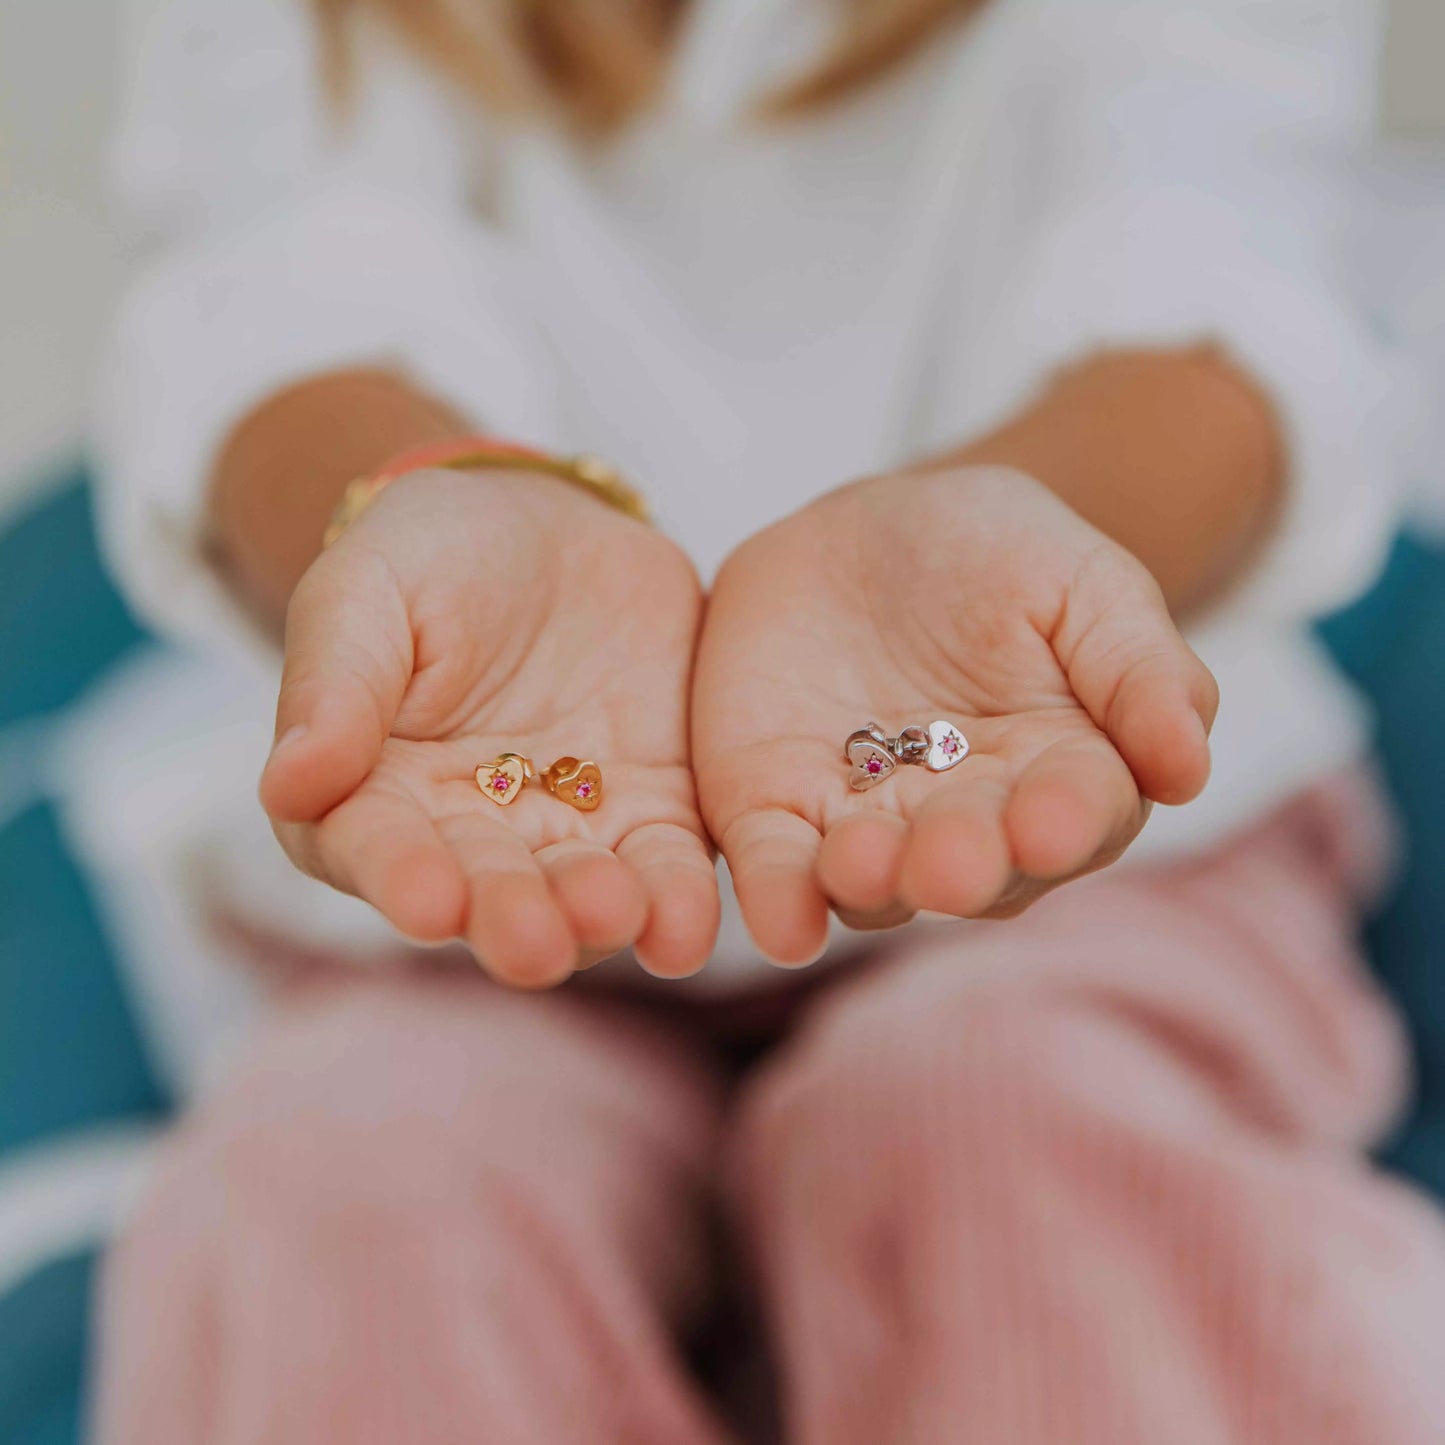 deux paires de boucles d'oreilles enfants petit coeur en argent en formes de coeur serties de zircon fuschia dans une étoile gravée présentées au creux de deux mains